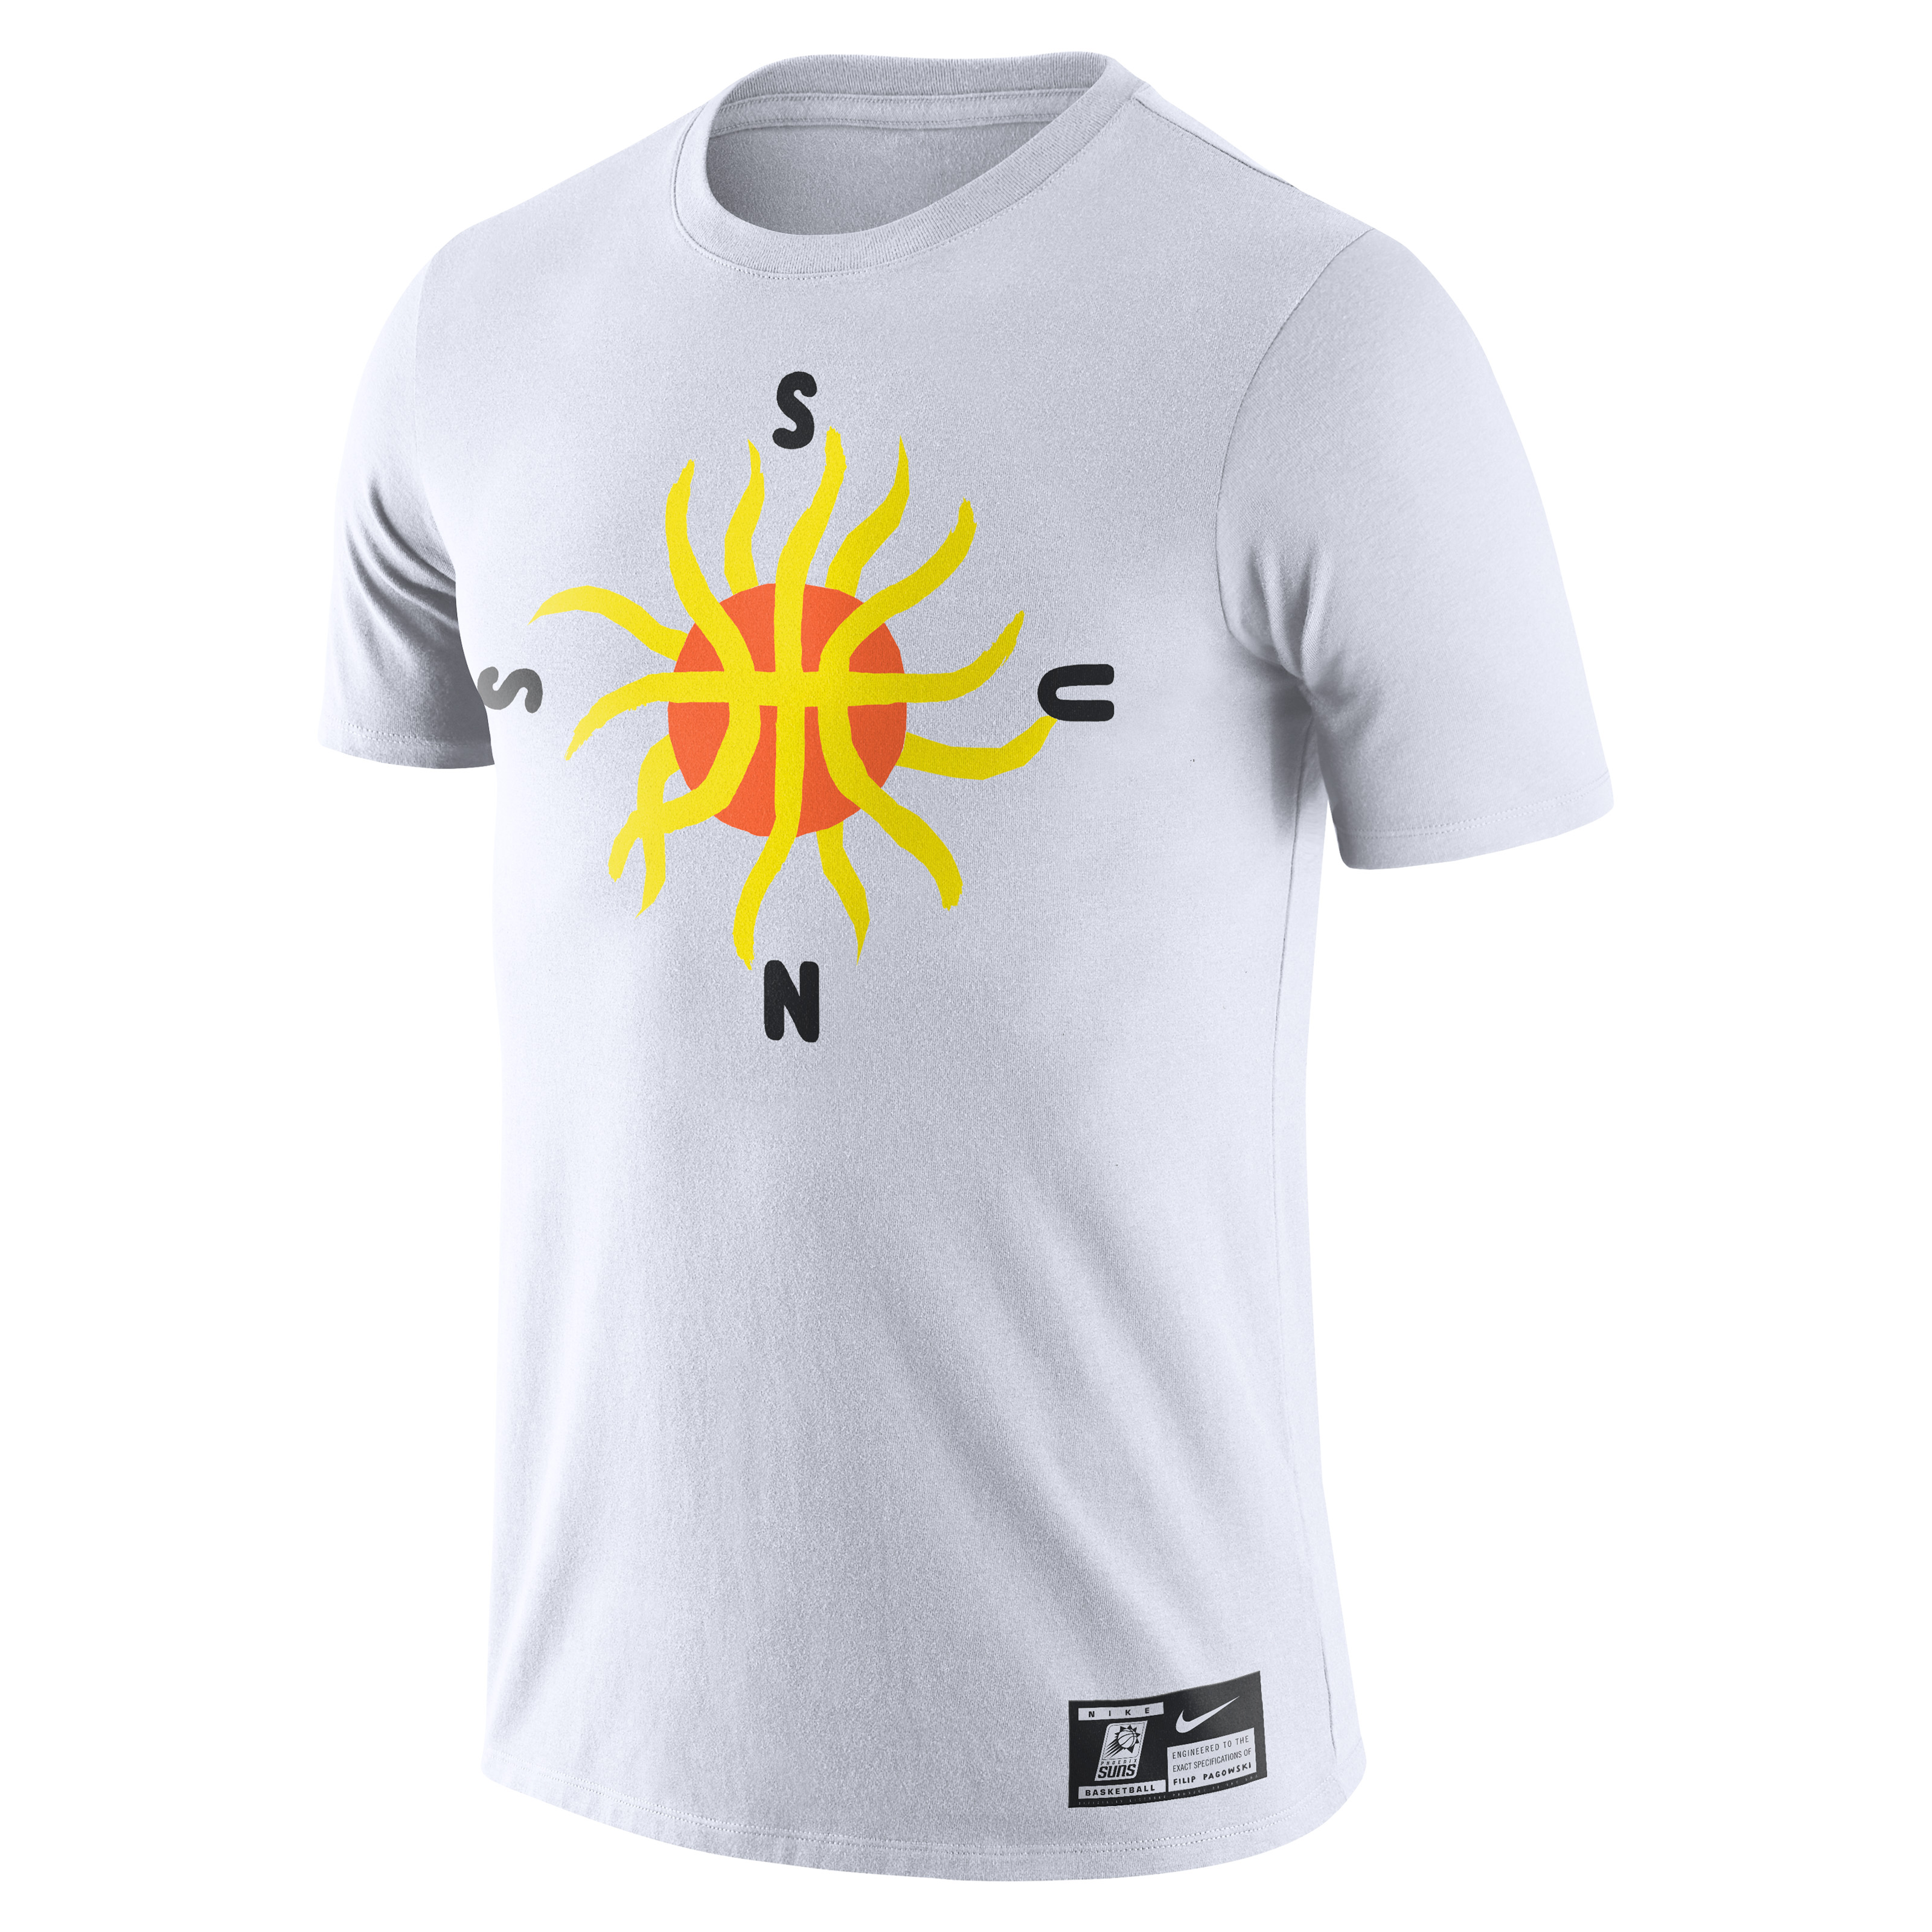 Filip Pagowski Nike T shirt &#x27;Phoenix Suns&#x27;